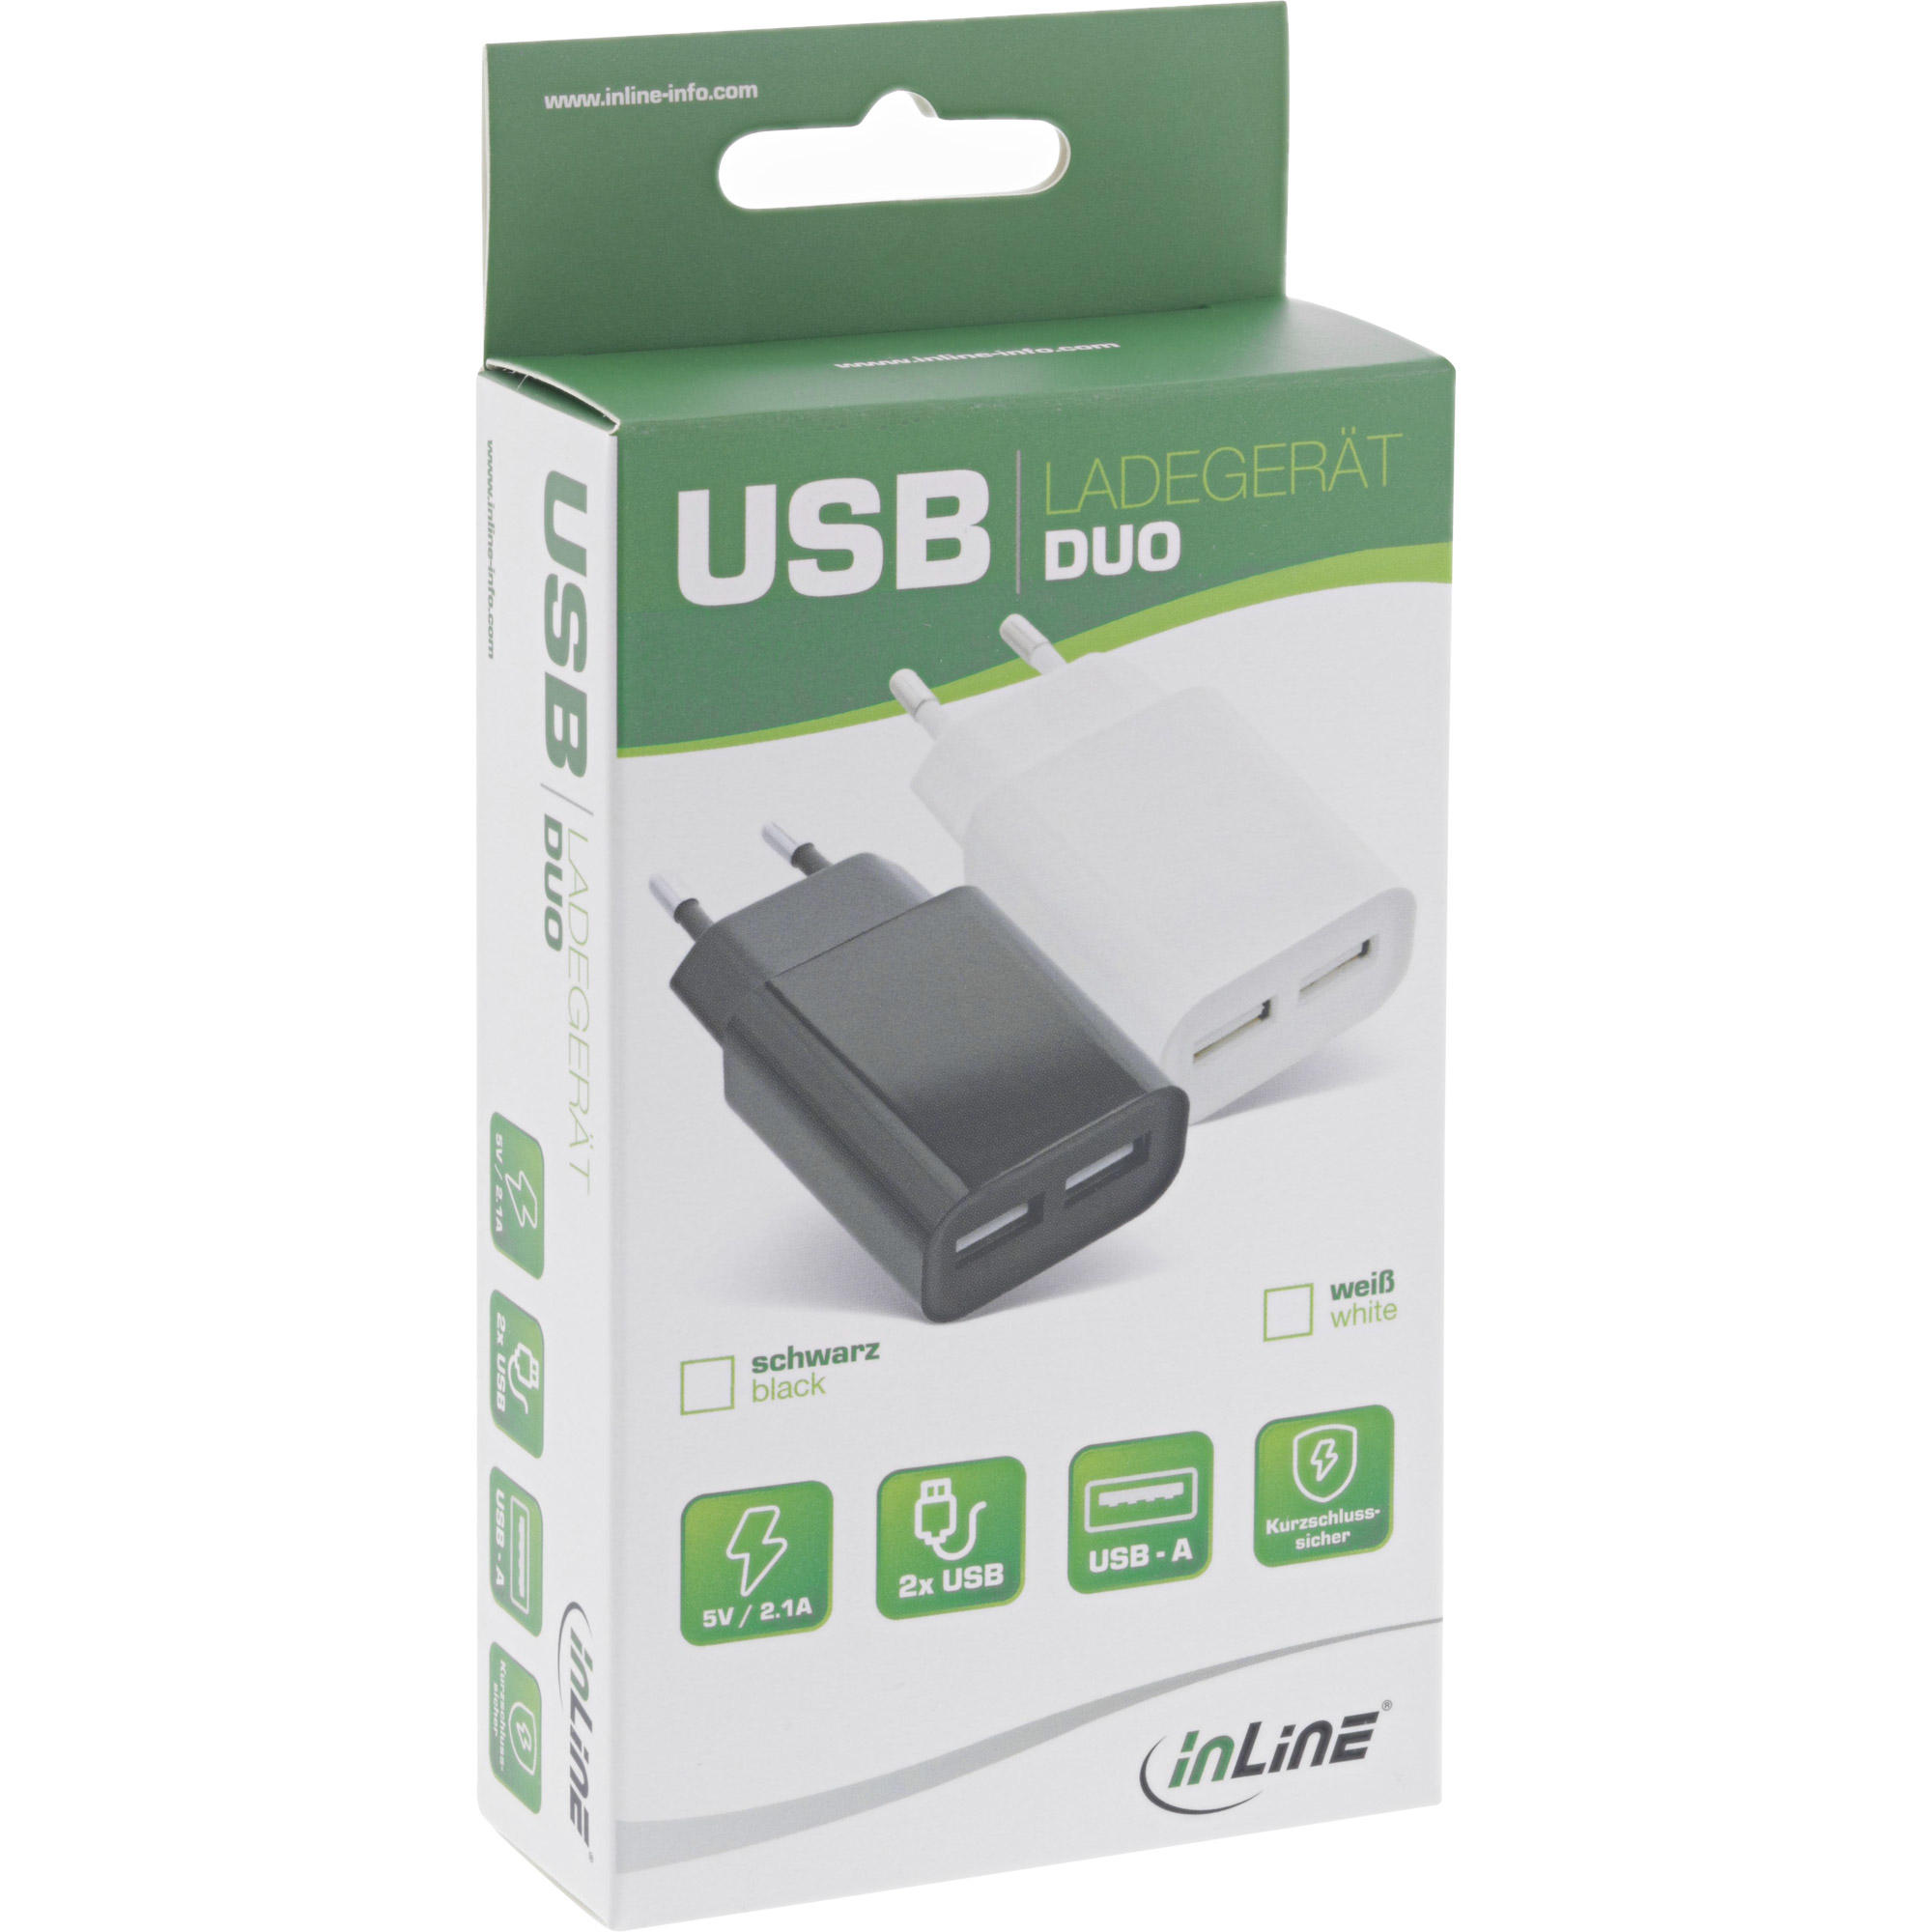 31503W INLINE INC USB Ladegert DUO - Netzteil 2-fach - 100-240V zu 5V/2.1A - wei